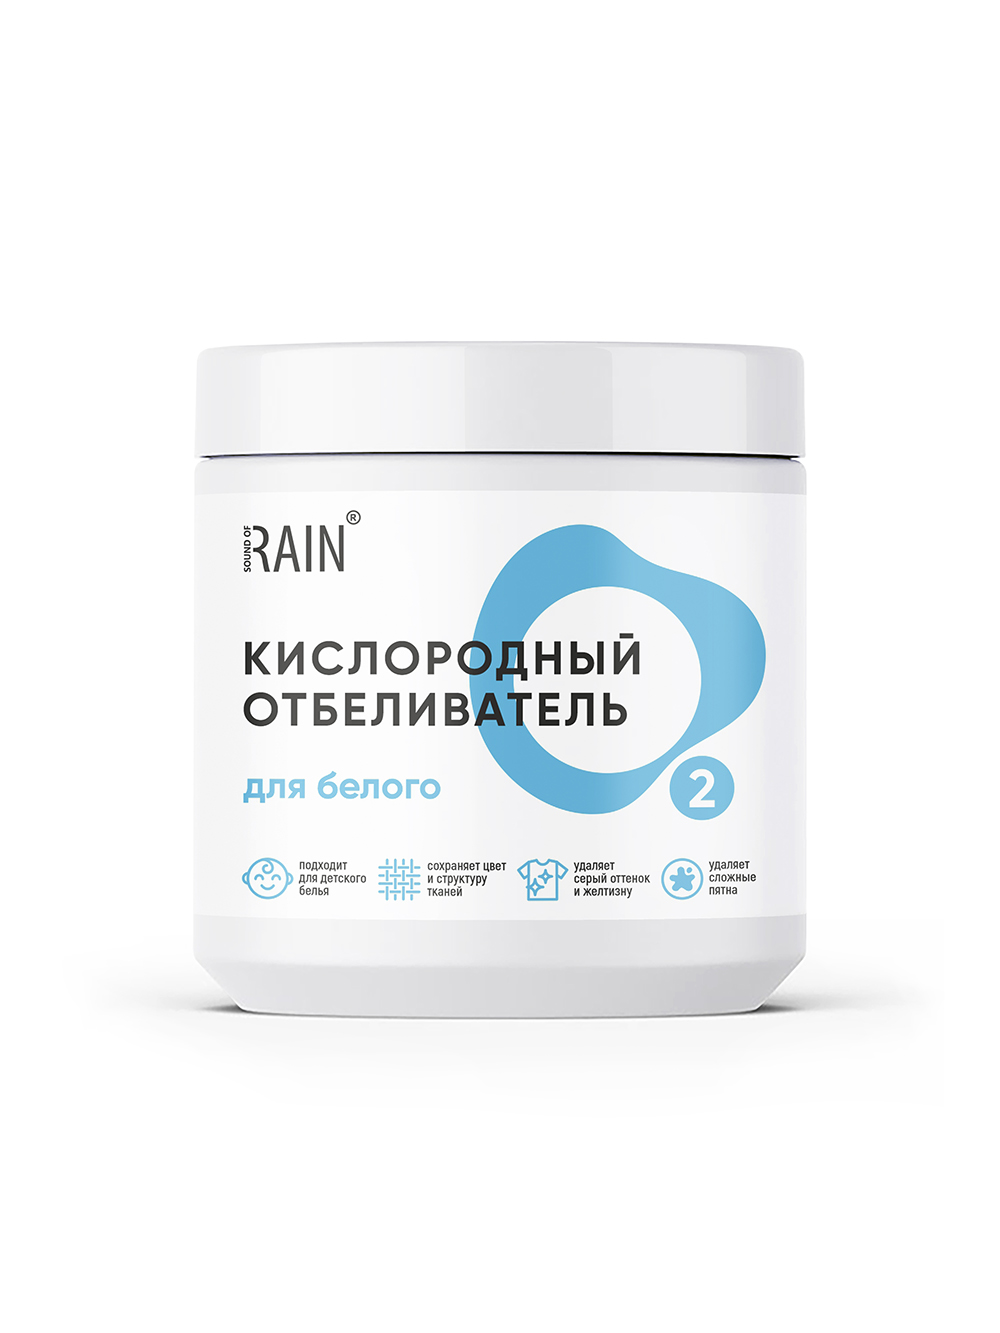 RAIN Кислородный отбеливатель для белого белья 650 гр